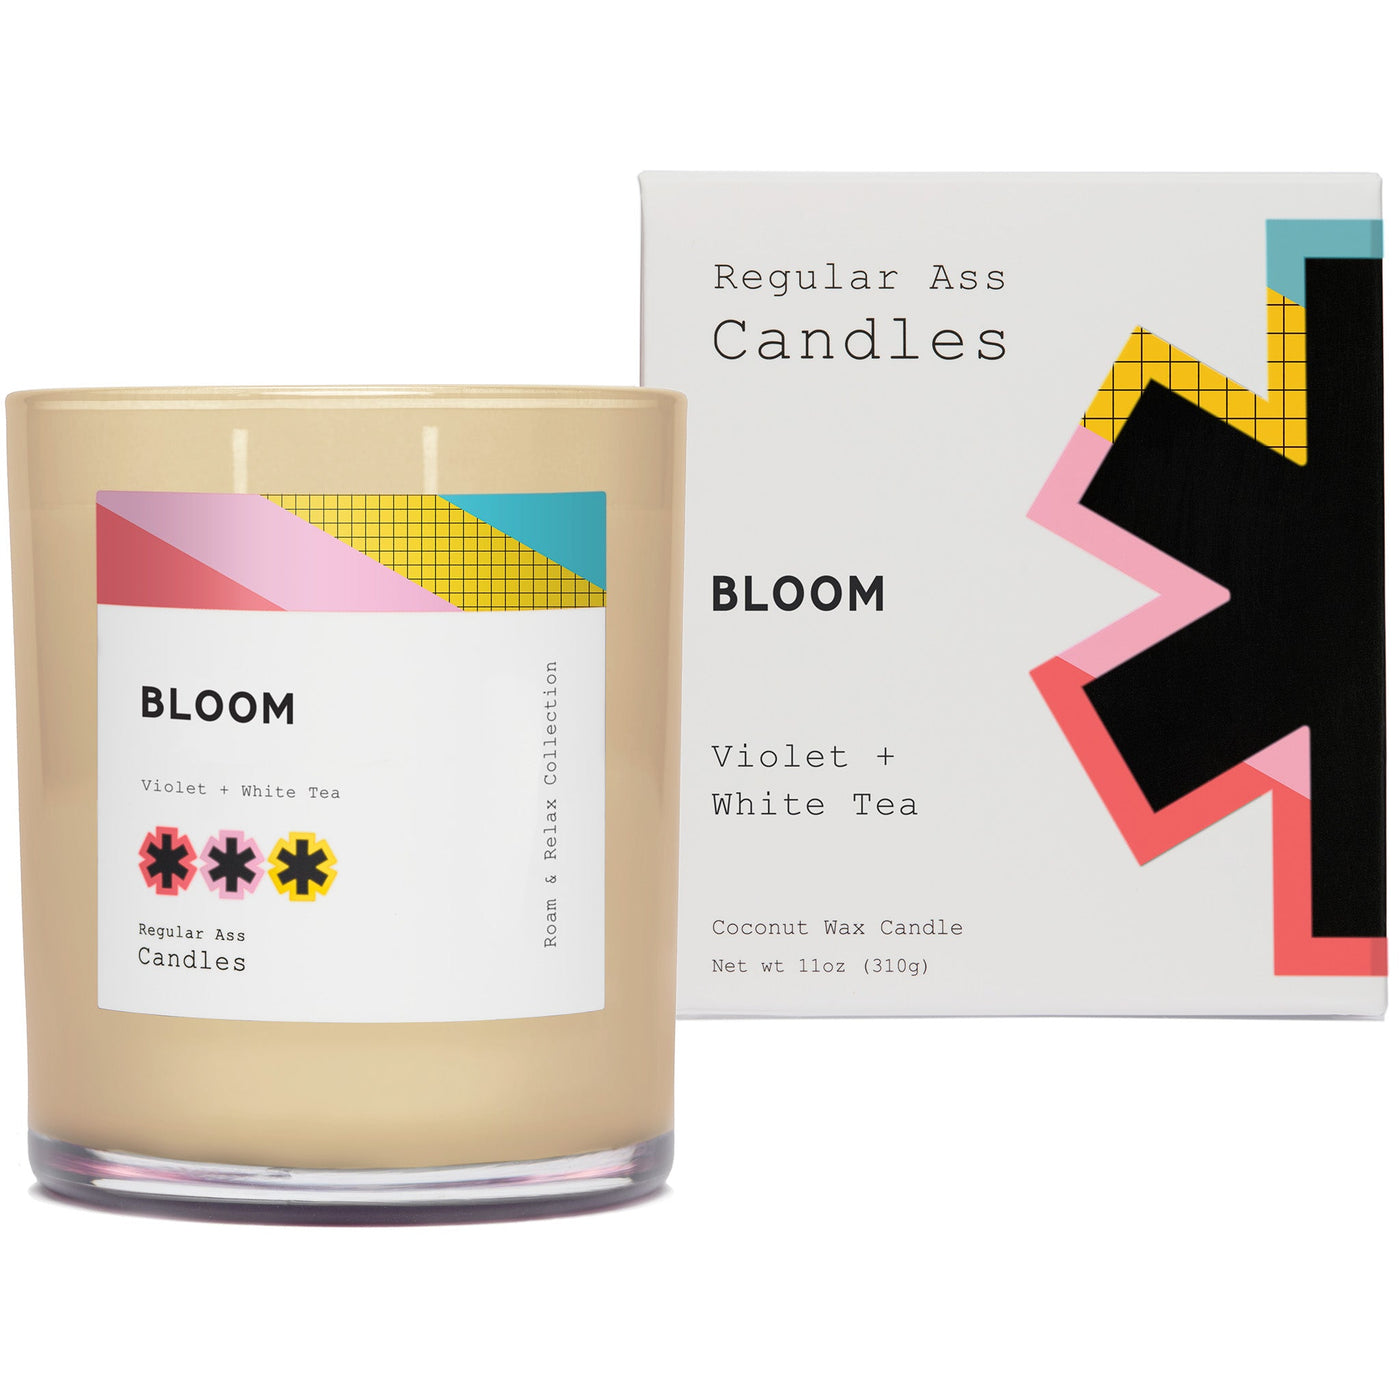 Bloom, Violet + White Tea 11oz Candle